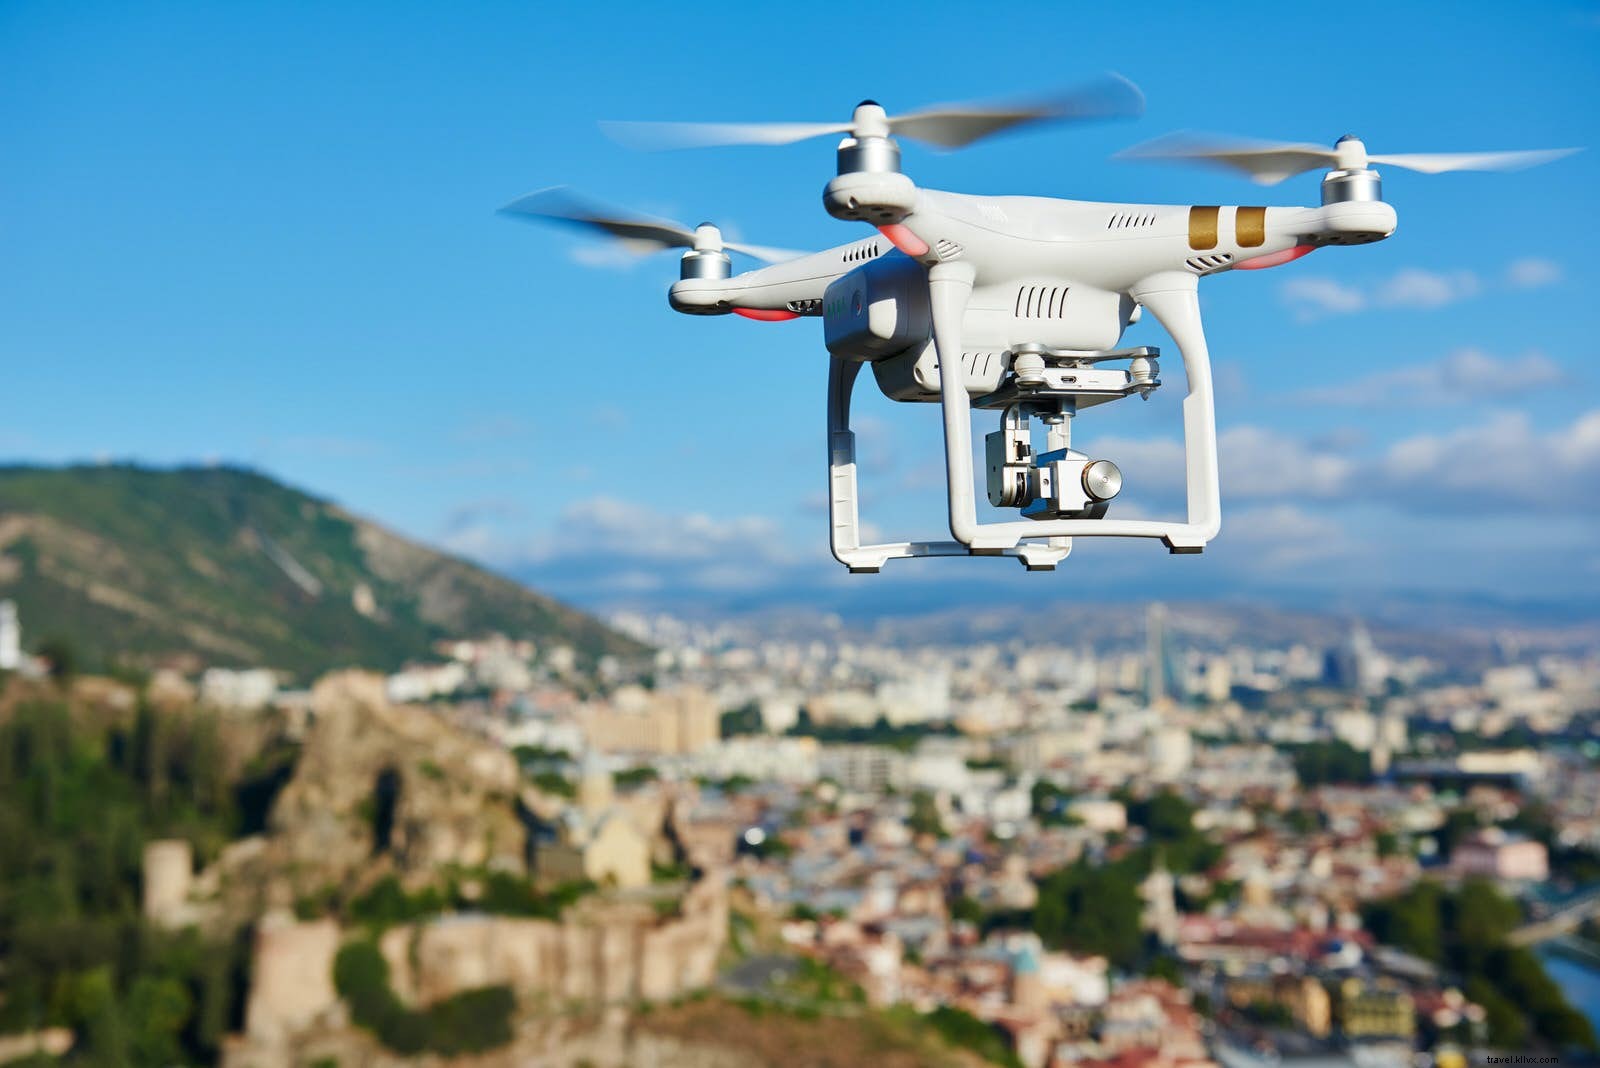 droni, incontri e disintossicazione digitale:sette previsioni di viaggio per il 2018 